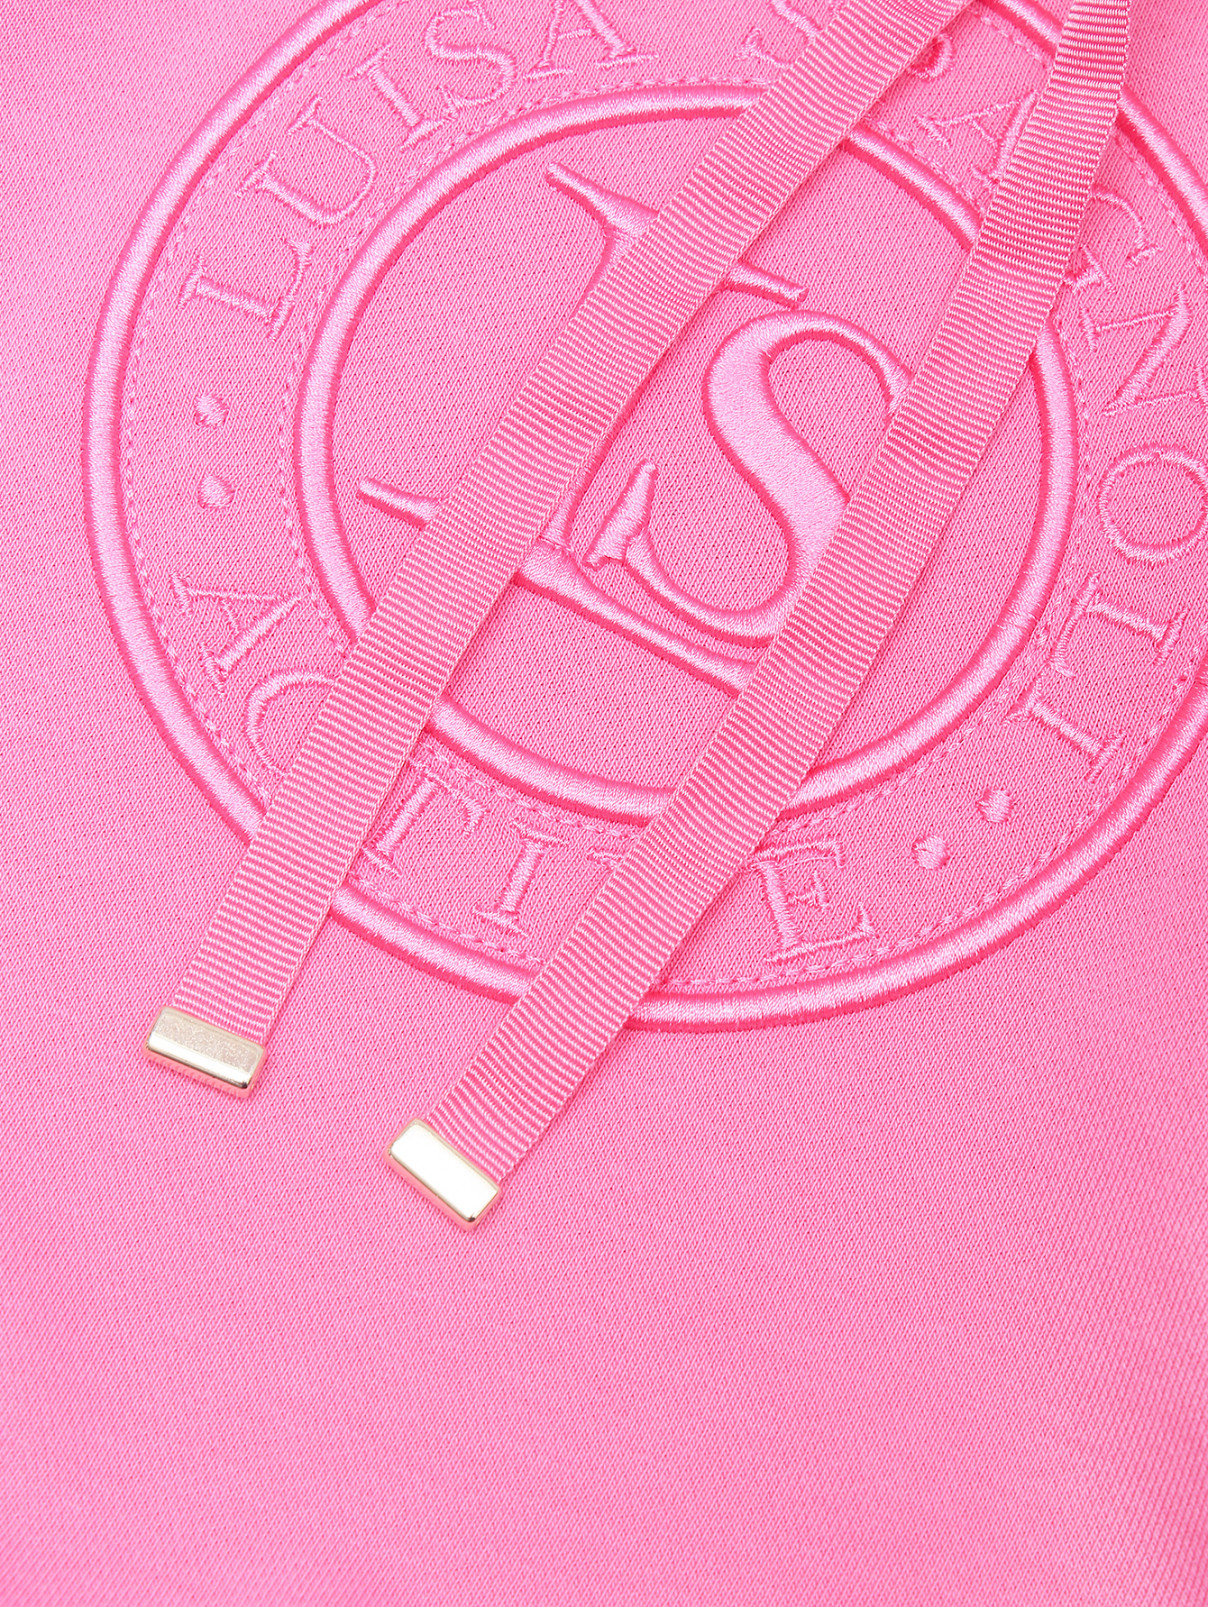 Трикотажная толстовка с длинным рукавом Luisa Spagnoli  –  Деталь  – Цвет:  Розовый